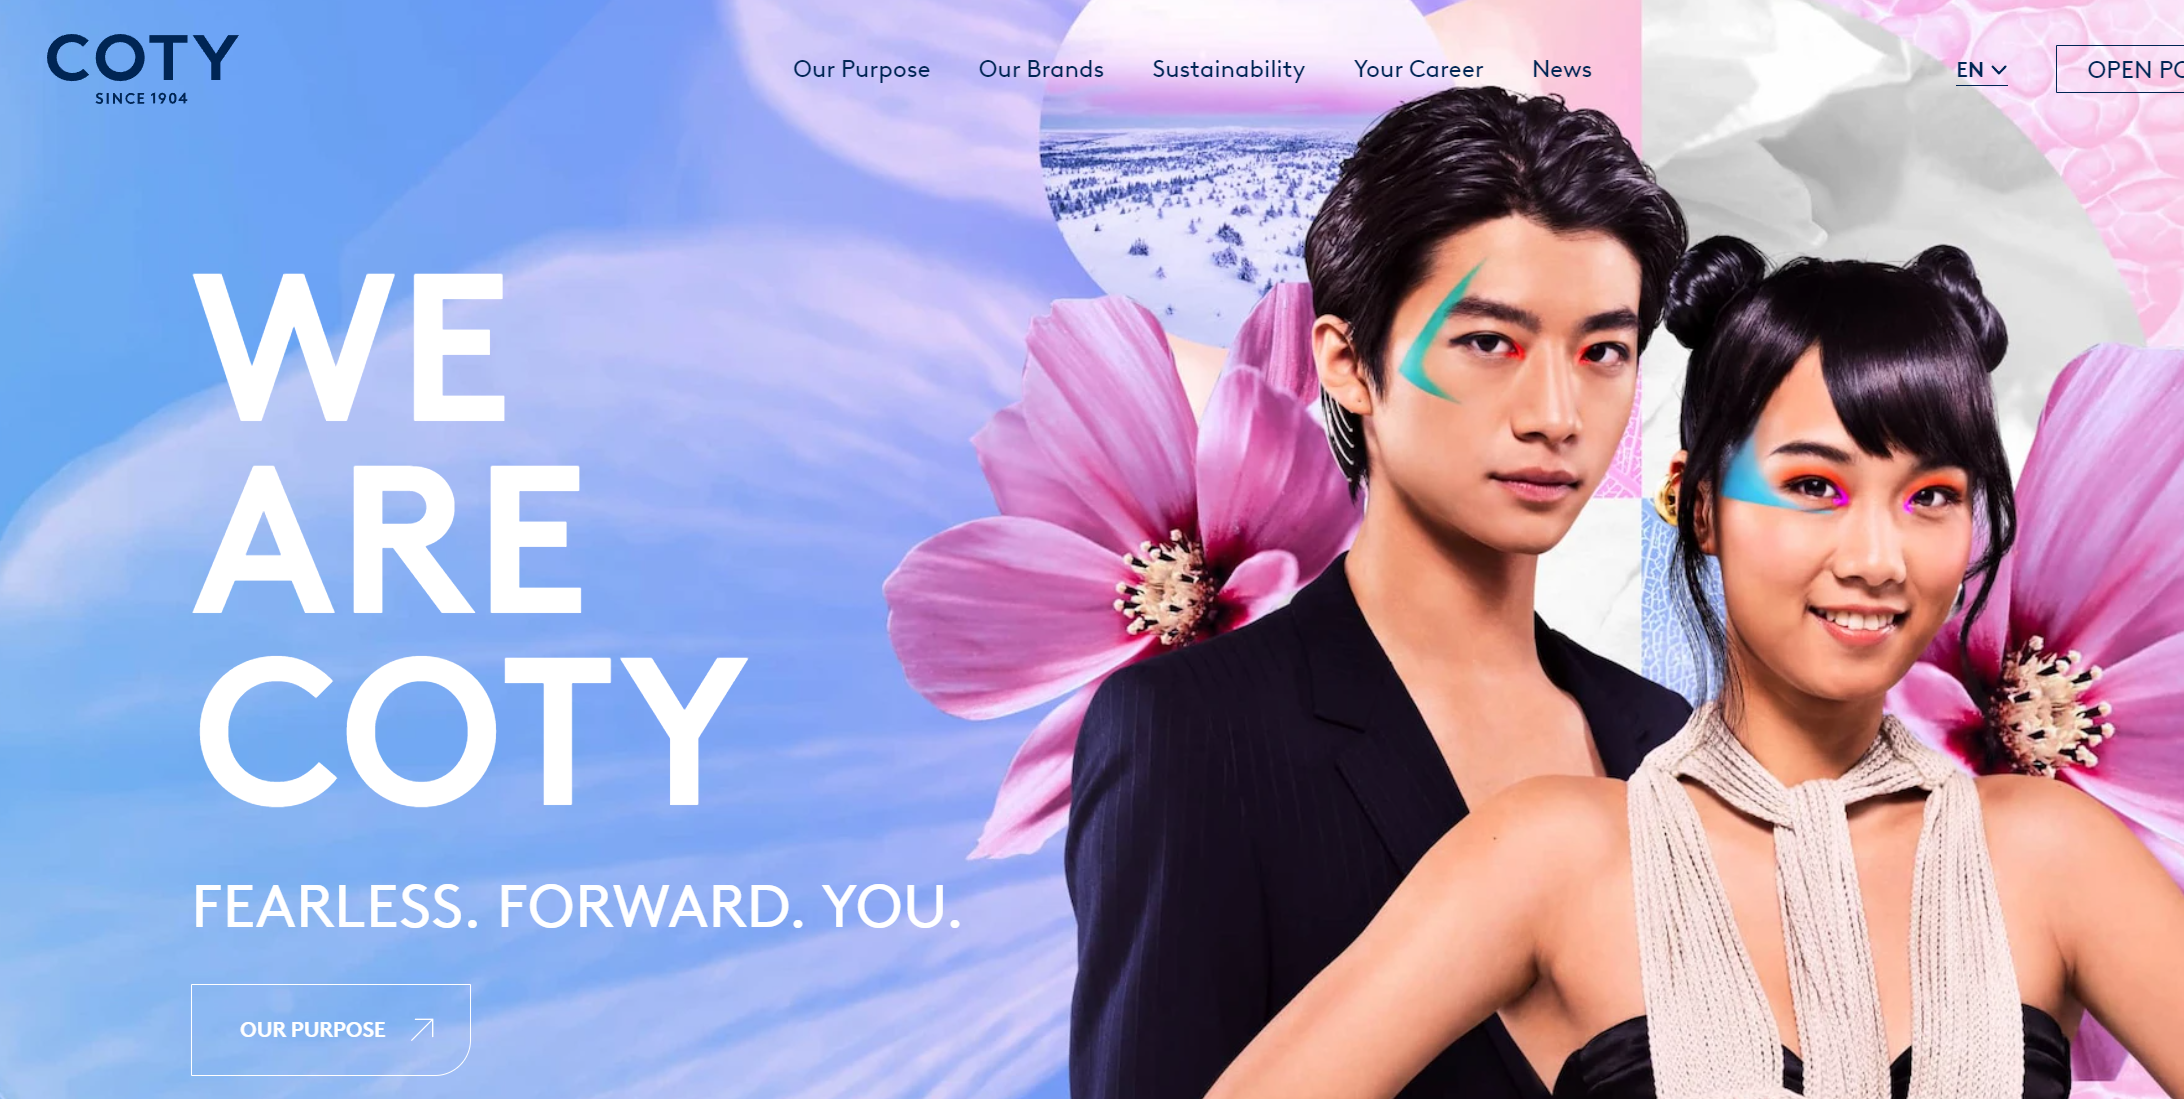 香水美妆集团 COTY 正式在巴黎证券交易所二次上市